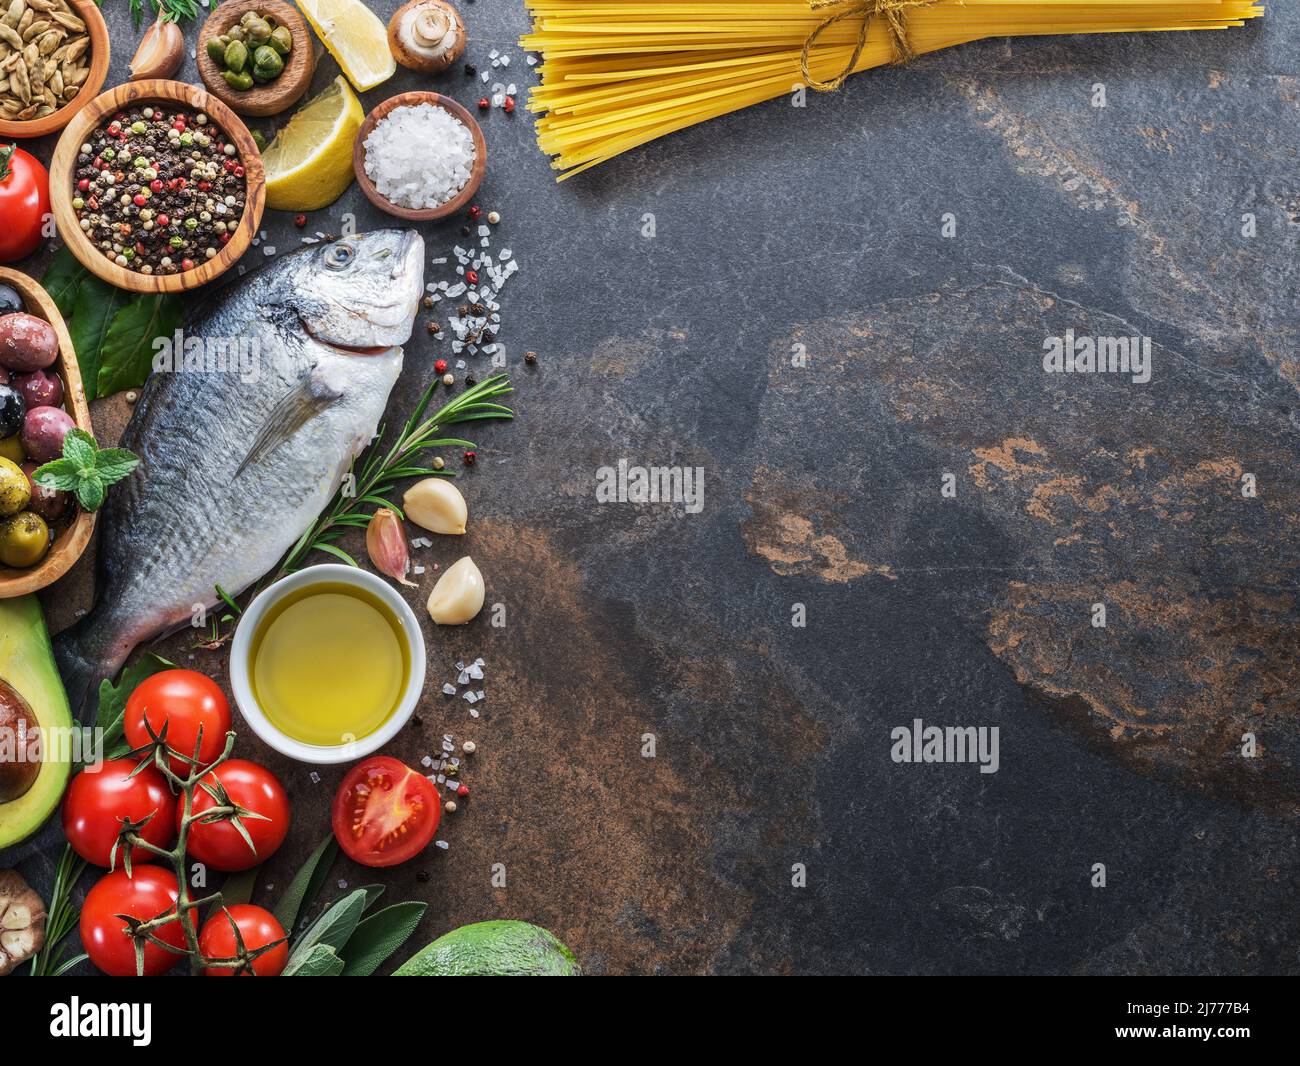 Poisson, légumes et pâtes les principaux ingrédients de la cuisine méditerranéenne. Mise en page. Banque D'Images